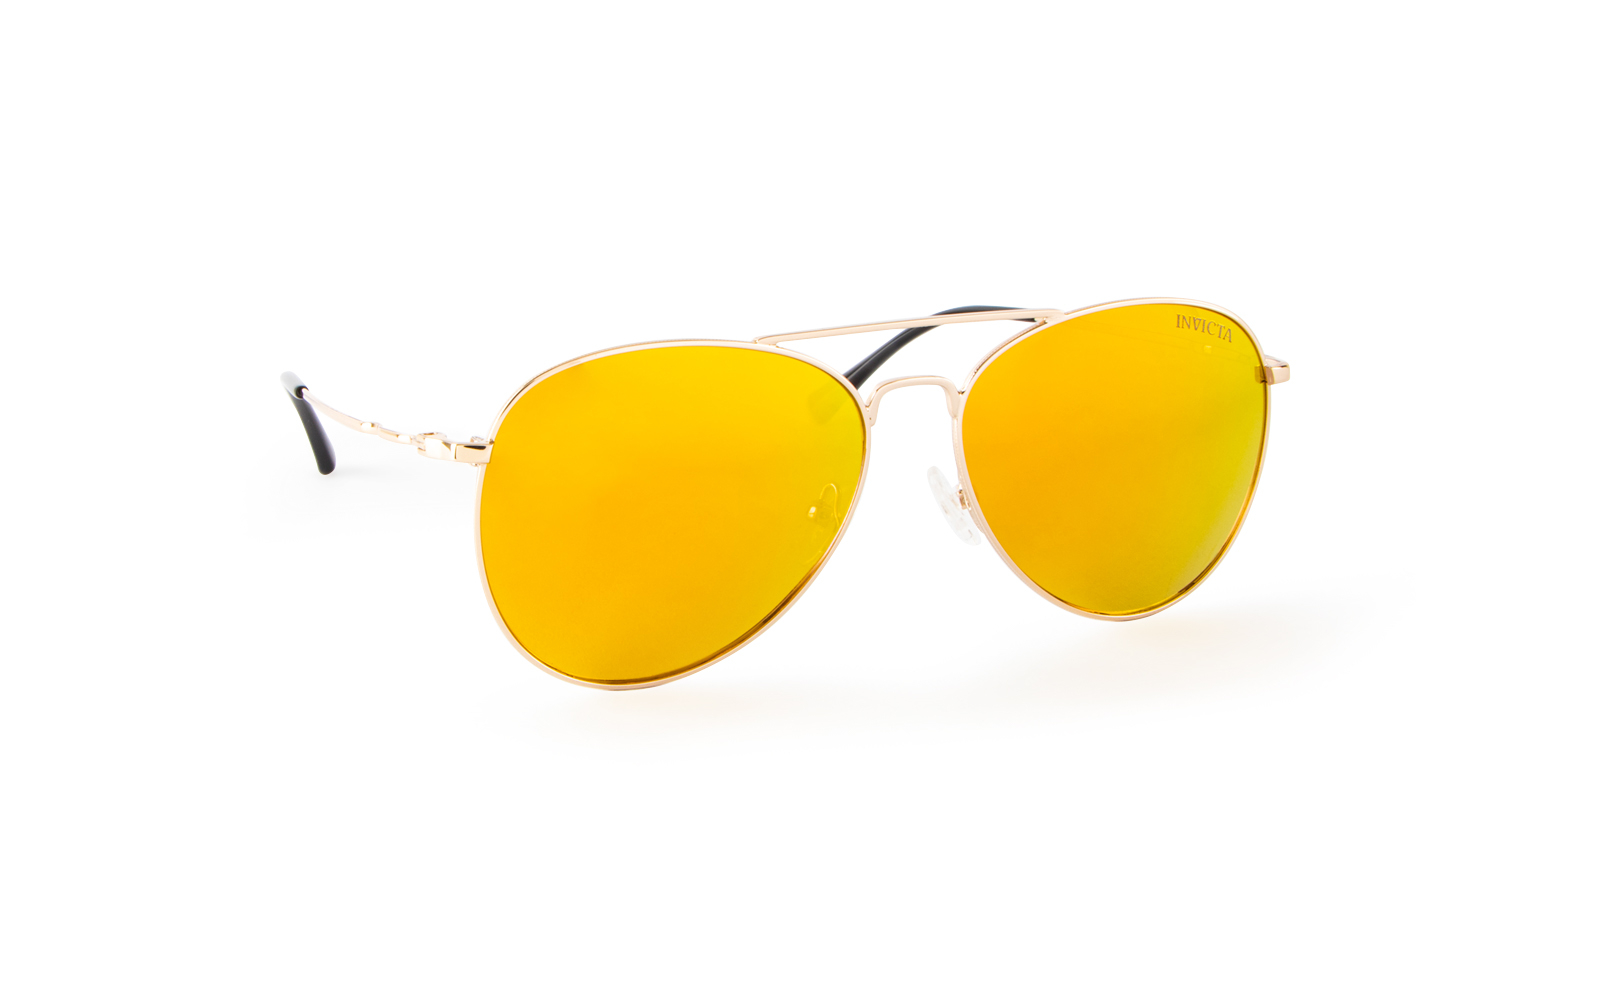 Invicta Men's Aviator Aviator Sunglasses, Yellow (22523-AVI-09)